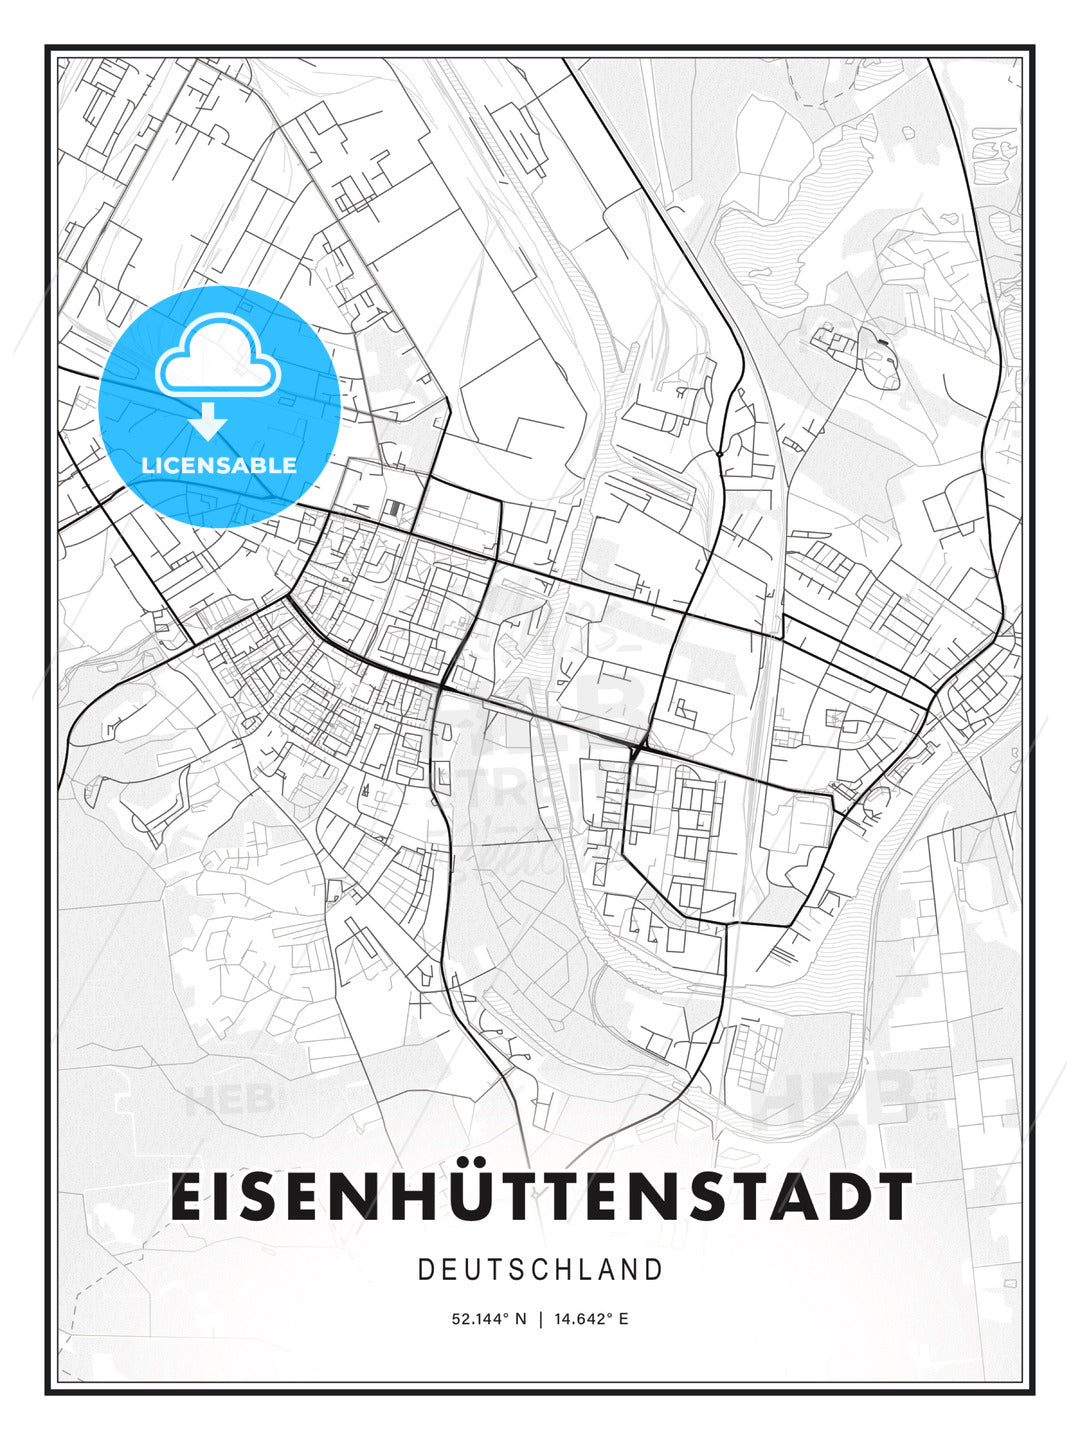 EISENHÜTTENSTADT / Eisenhuttenstadt, Germany, Modern Print Template in Various Formats - HEBSTREITS Sketches